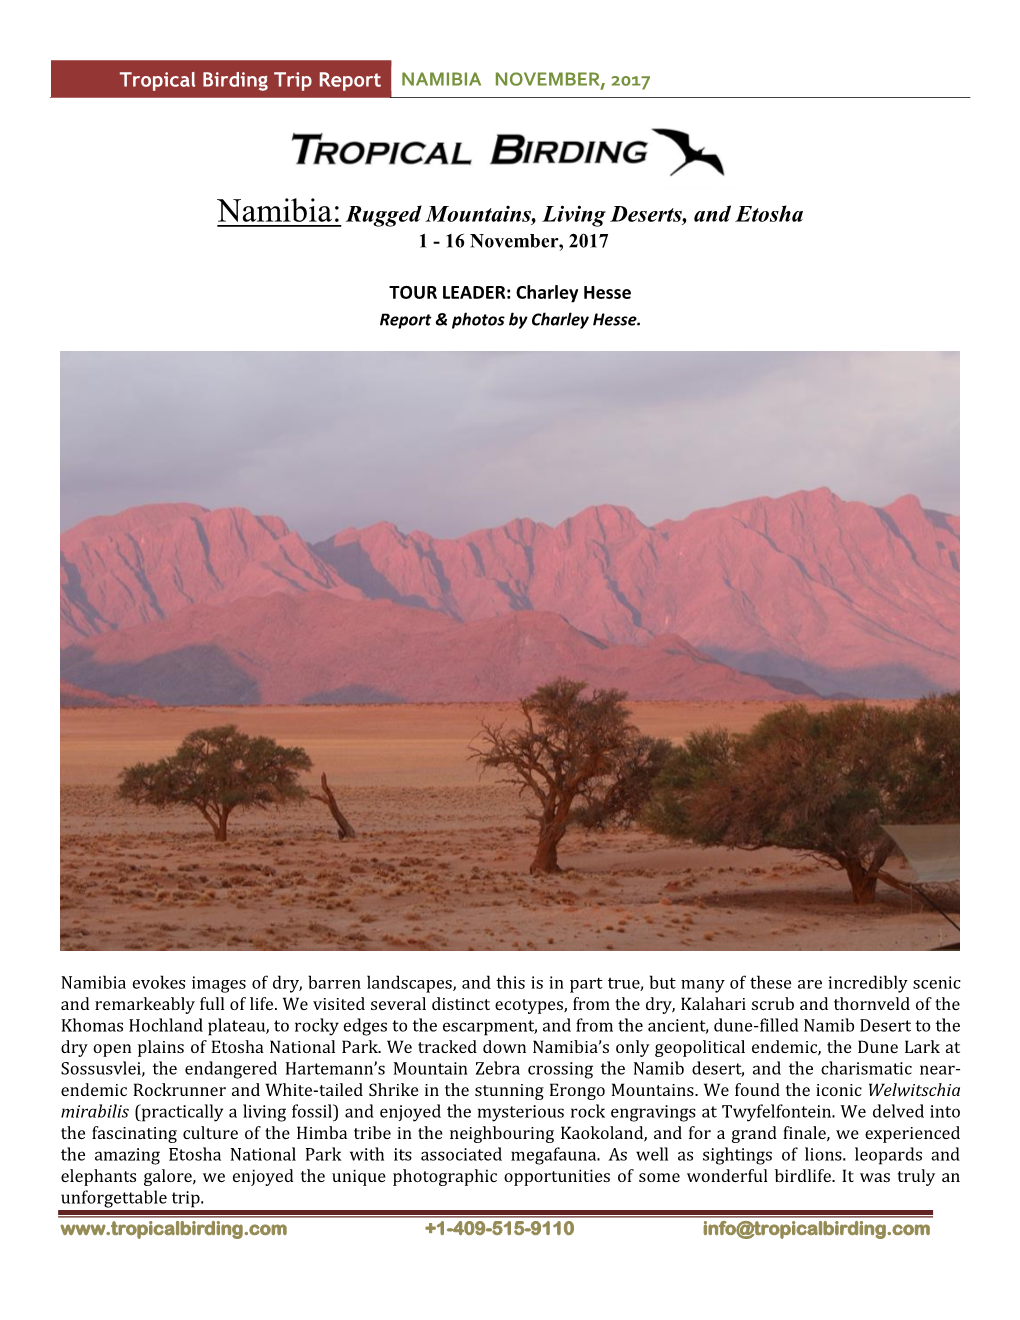 Namibia:Rugged Mountains, Living Deserts, and Etosha